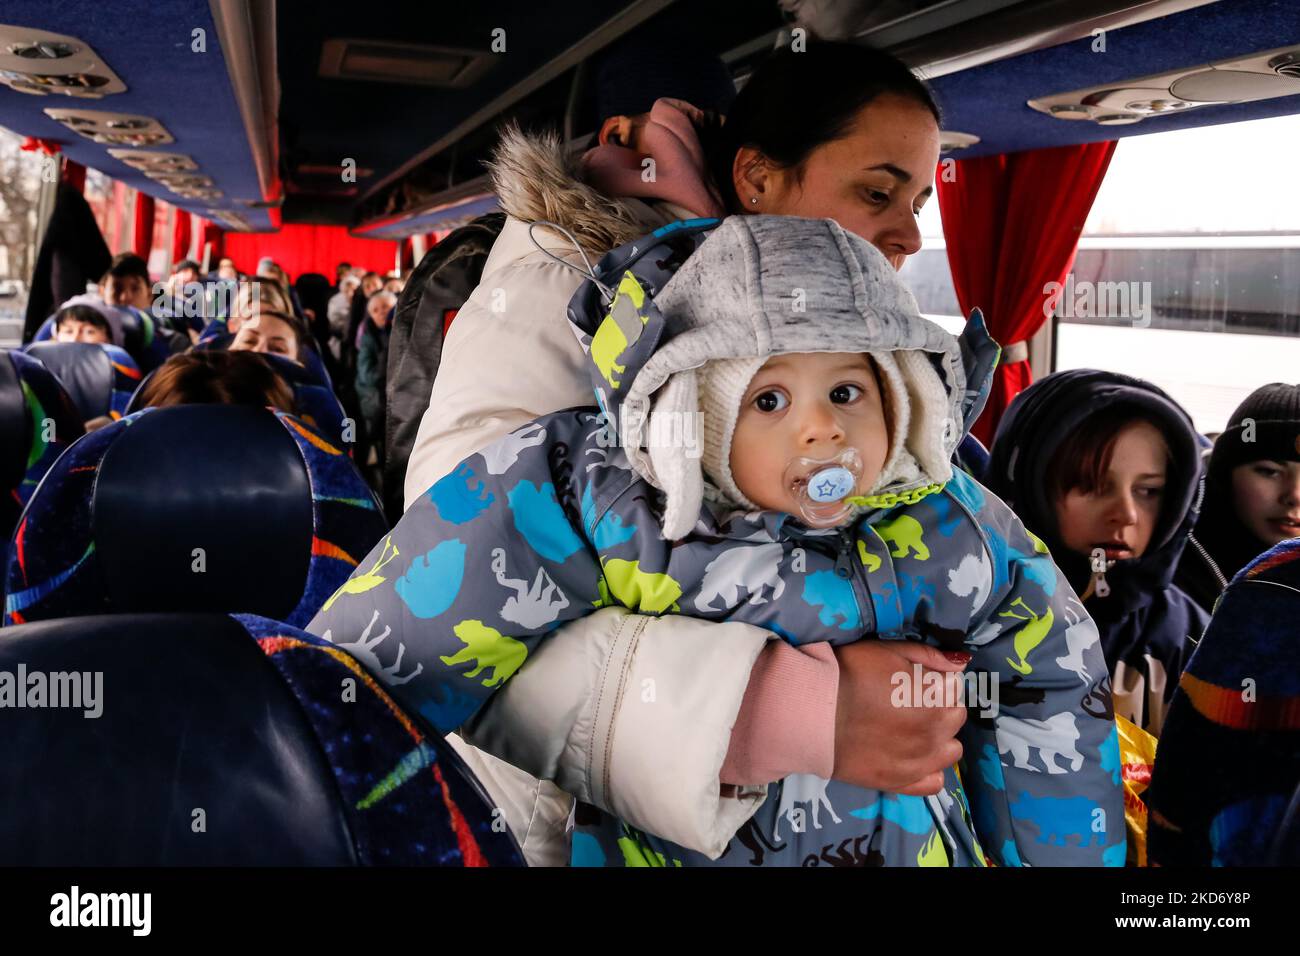 Una famiglia di rifugiati ucraini si siede in un pullman dell'agenzia di viaggi Abdar Polacca a Lviv, Ucraina, mentre partiranno per Cracovia, Polonia il 5 aprile 2022. Mentre la Federazione Russa invase l'Ucraina, il conflitto dovrebbe costringere fino a 5 milioni di ucraini a fuggire dal paese. Molti rifugiati cercano asilo in Polonia. La maggior parte degli aiuti di beneficenza in Polonia è fornita da individui, ONG e imprese. Abdar agenzia di viaggi è un business gestito da matrimonio misto - ucraino Olga e polacco Maciej Oszal. Dall'inizio del conflitto la coppia guida un allenatore a Lviv per consegnare gli aiuti umanitari GO Foto Stock